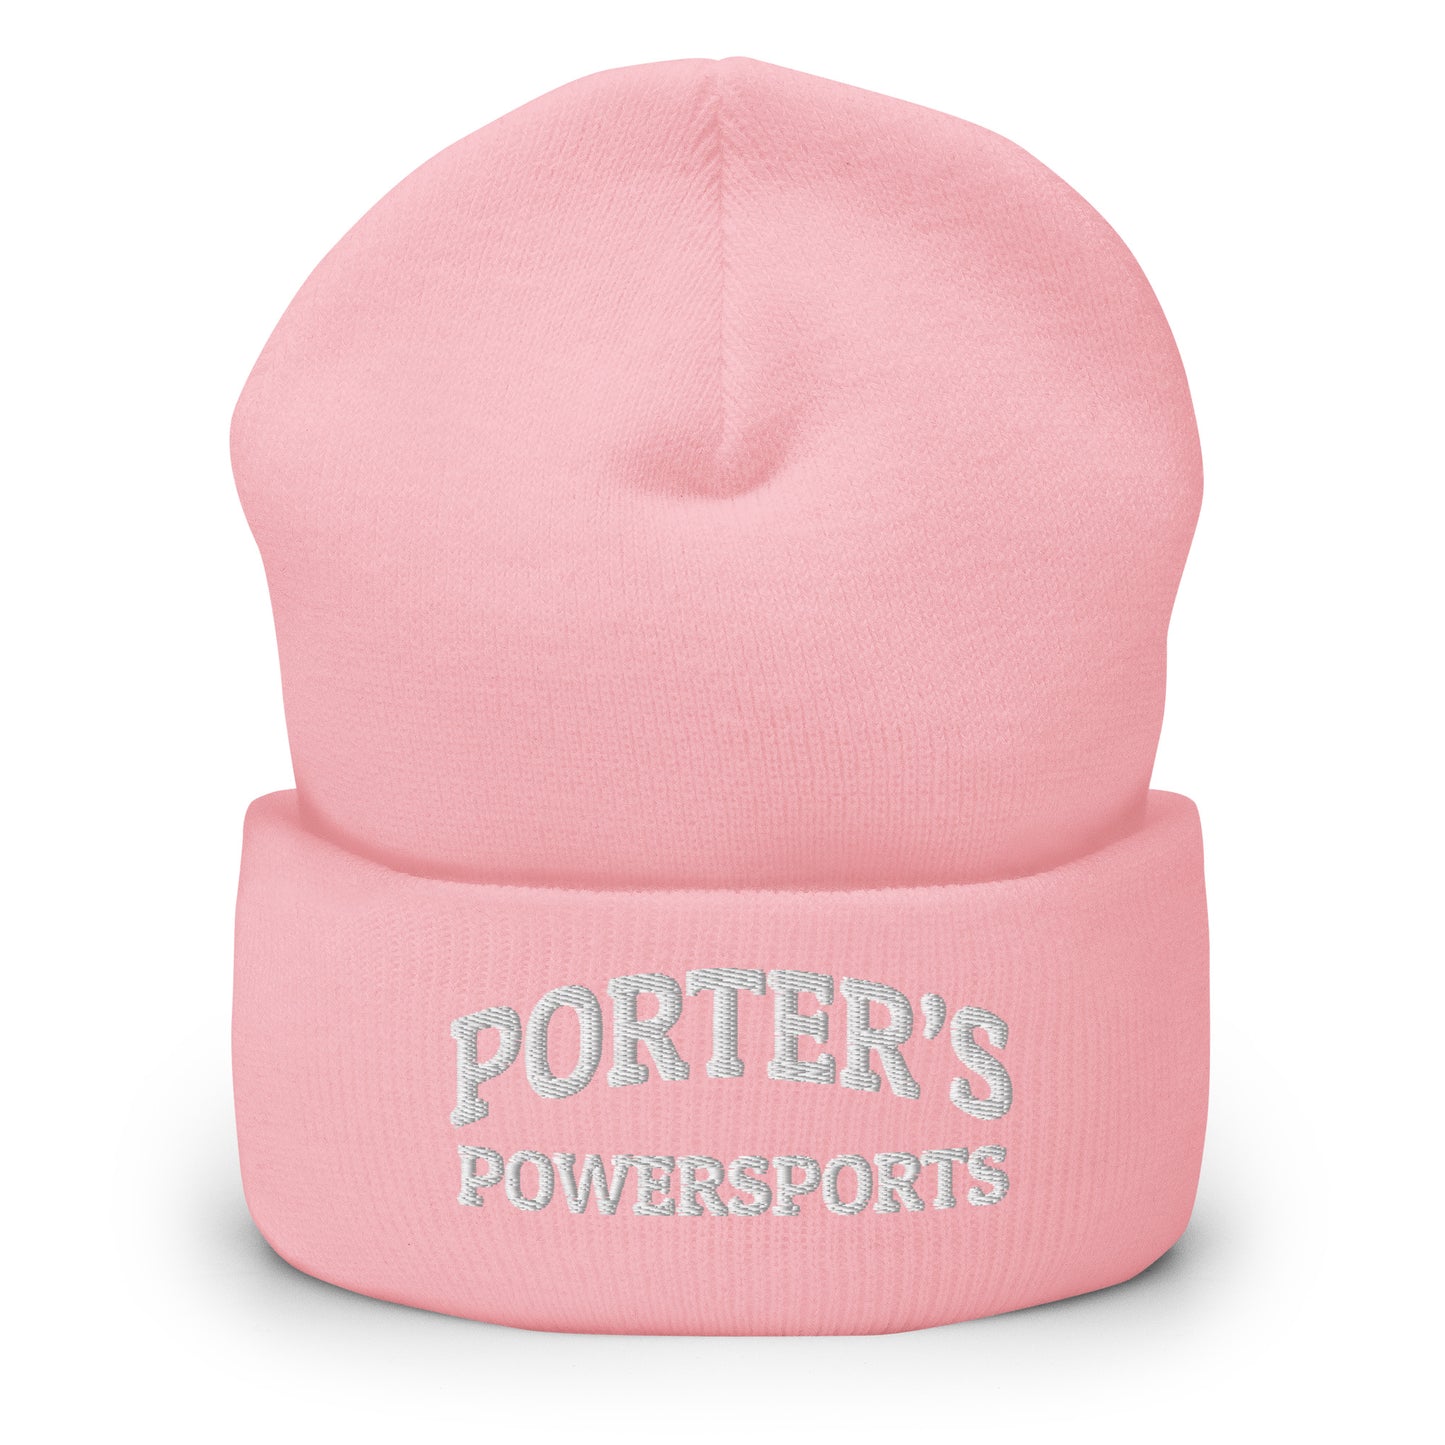 Porter's Powersports Cuffed Beanie